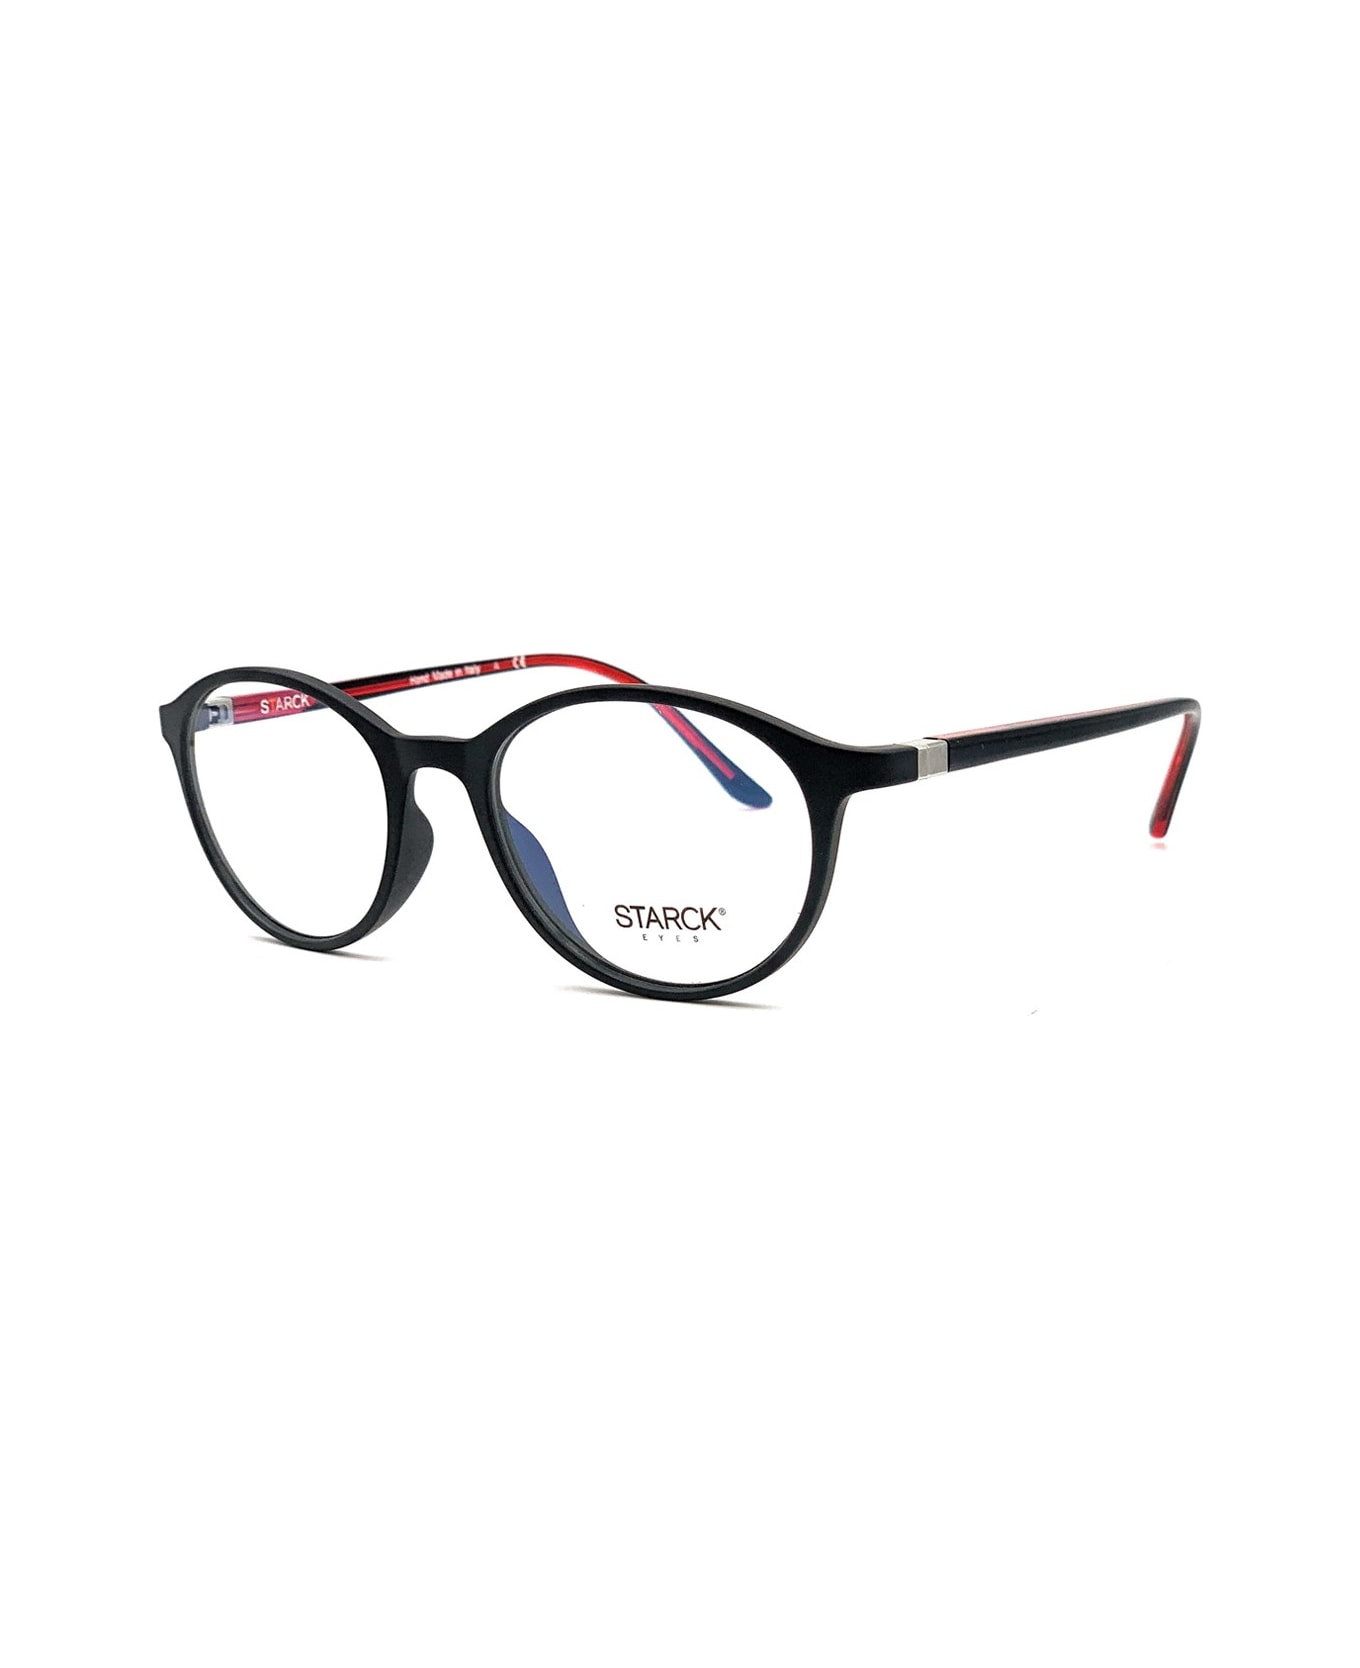 Philippe Starck 3007 Vista Glasses - Nero